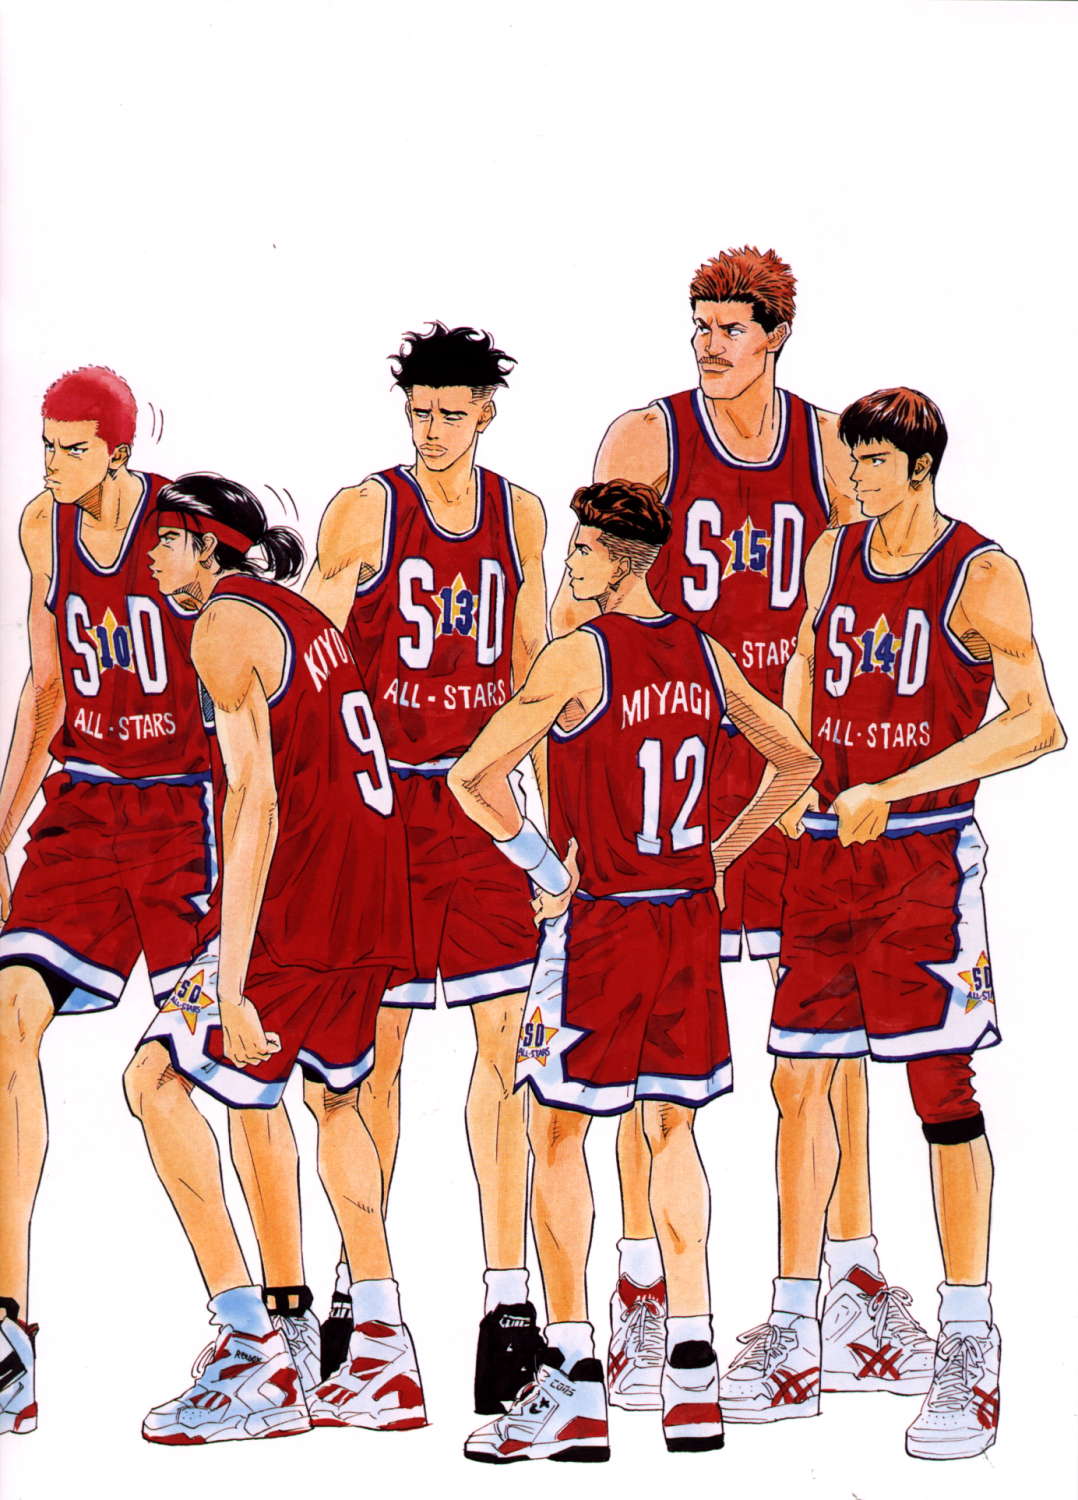 slam dunk wallpaper hd,team sport,basketball player,sports uniform,ball game,player